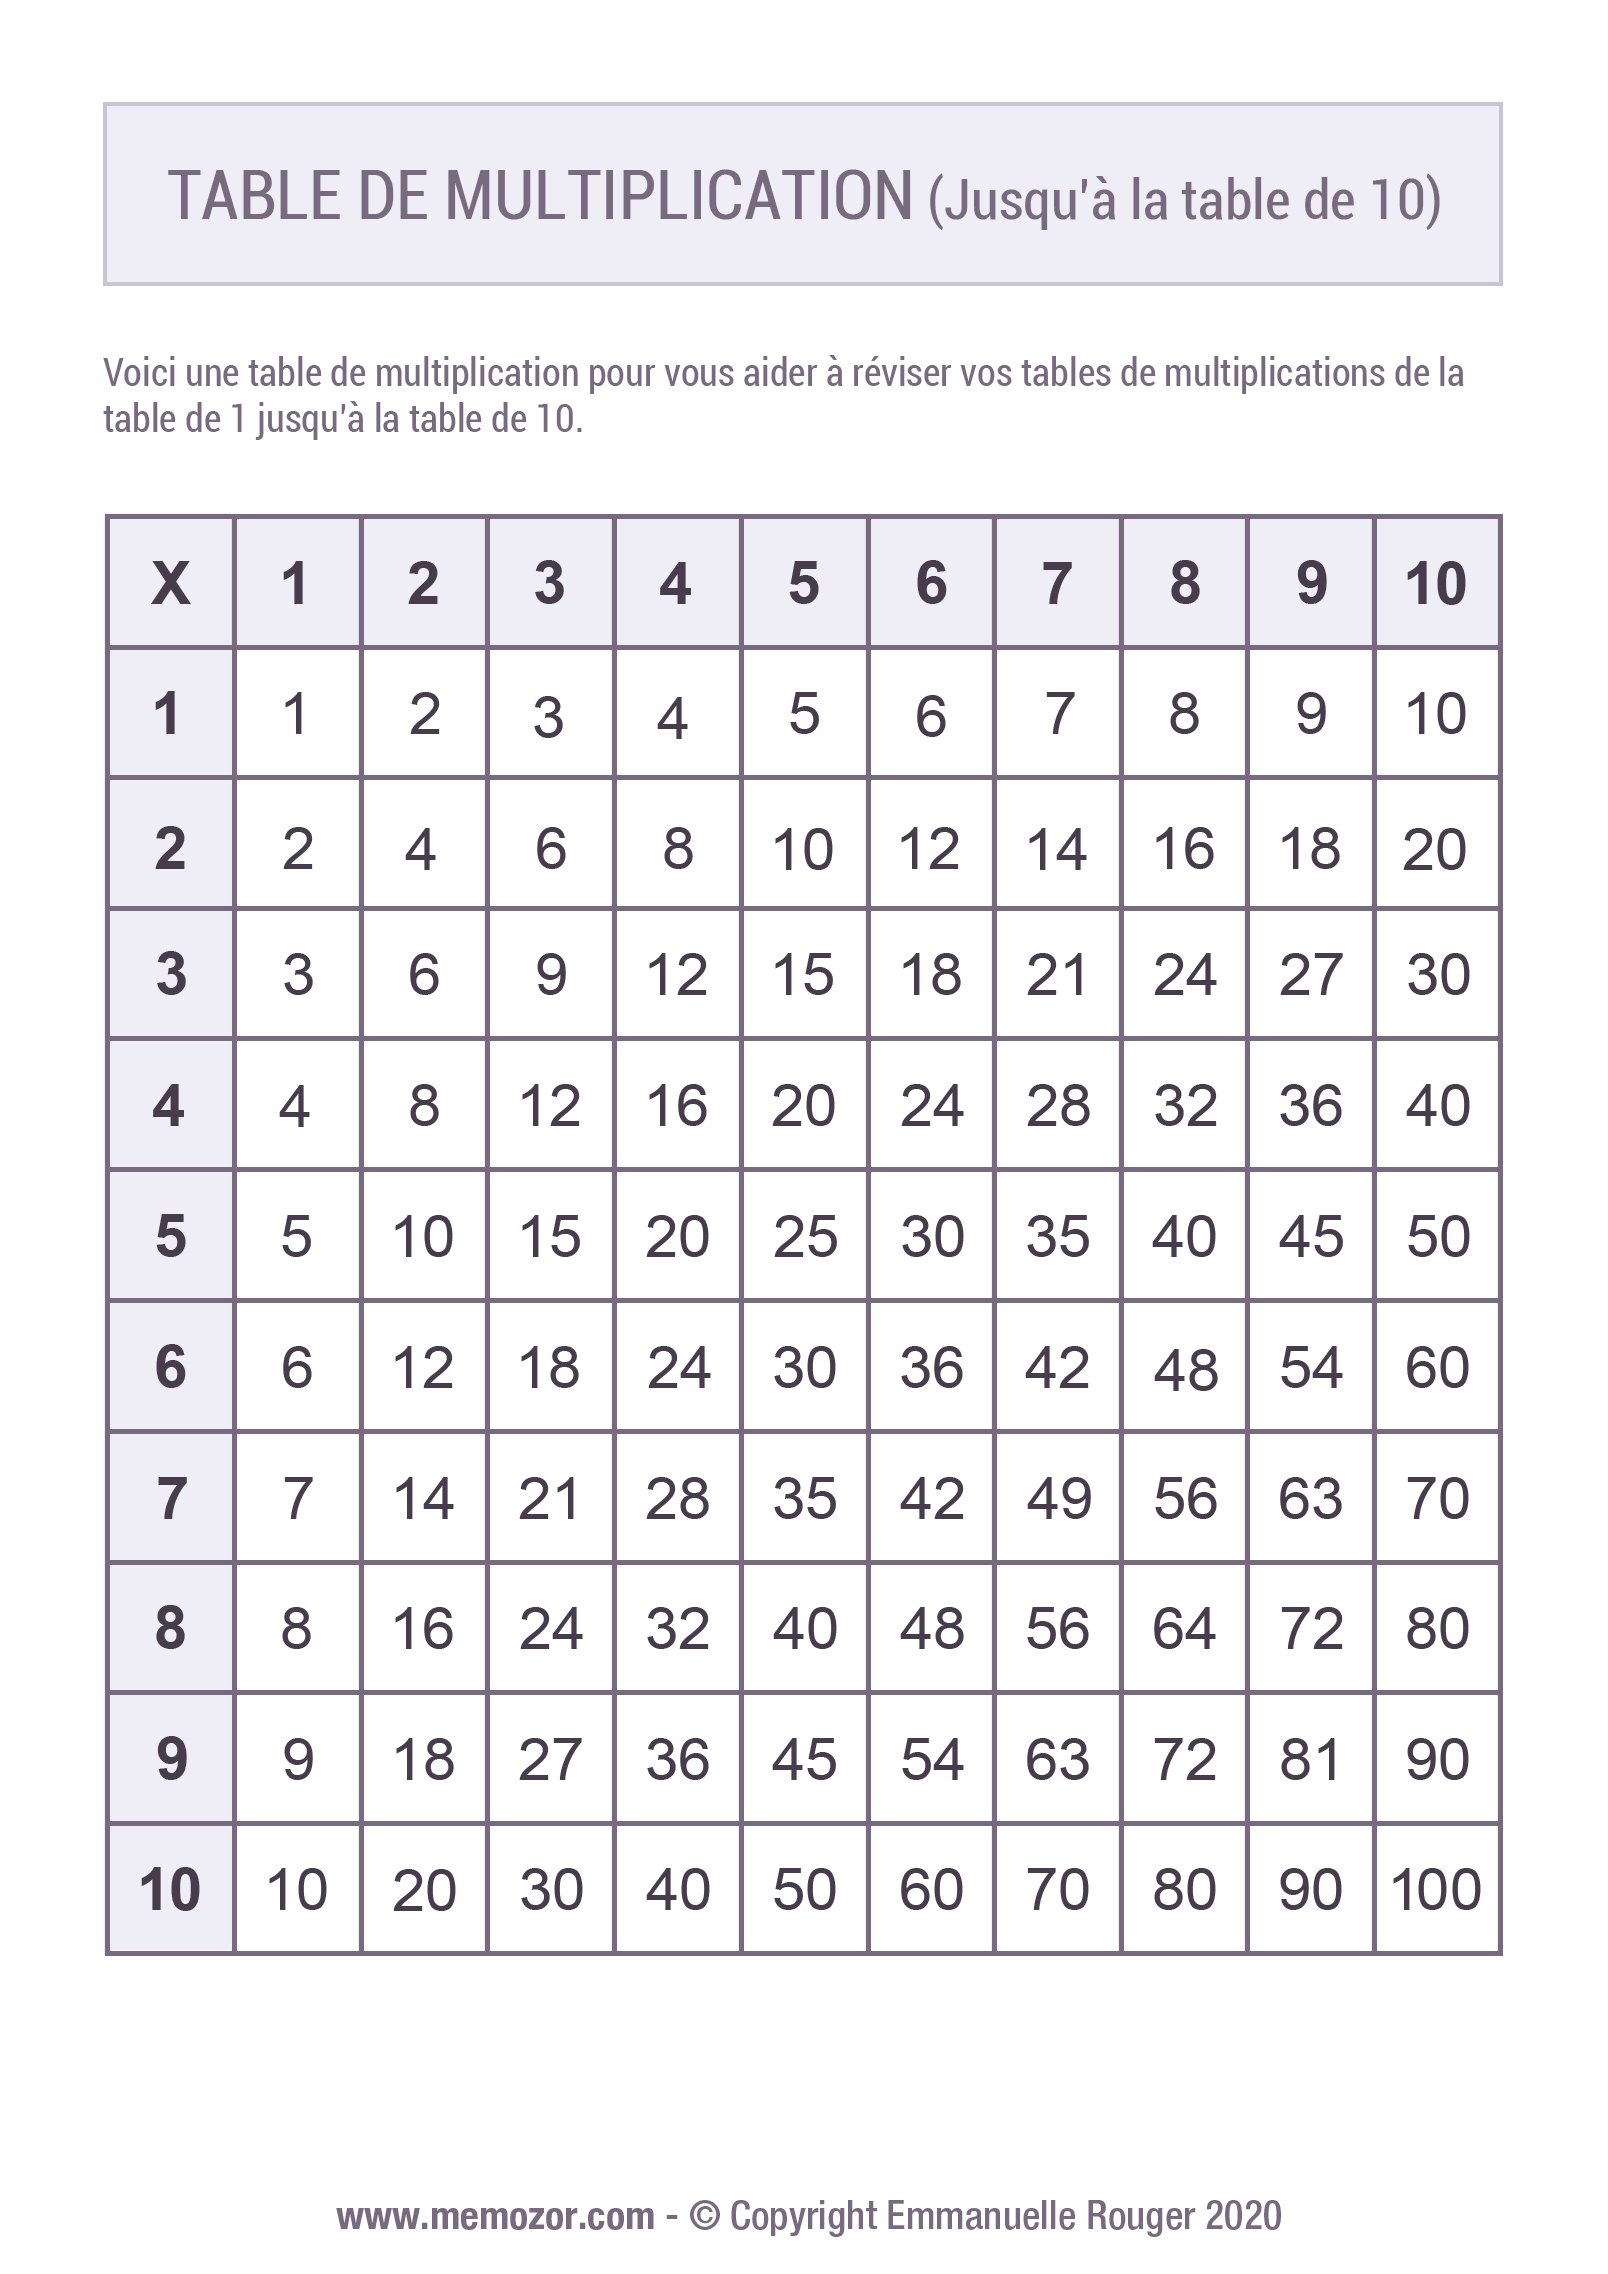 Table de Pythagore : pour apprendre facilement les tables de